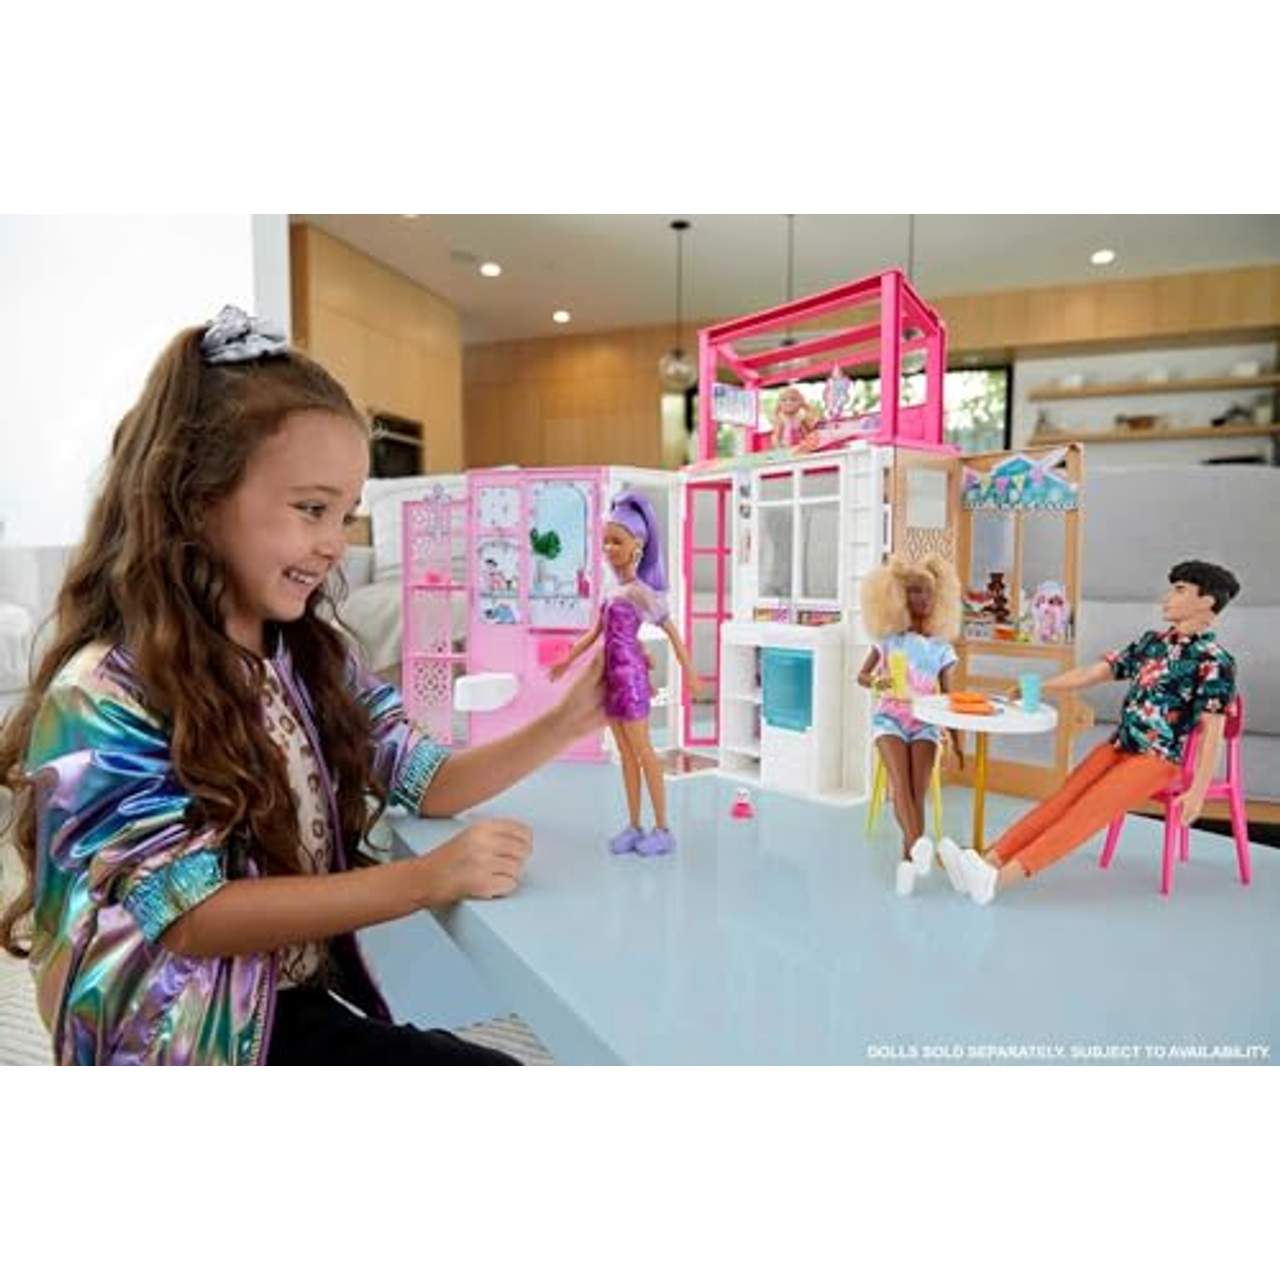 Barbie Puppenhaus mit Möbeln & Zubehör inklusive Haustierwelpe